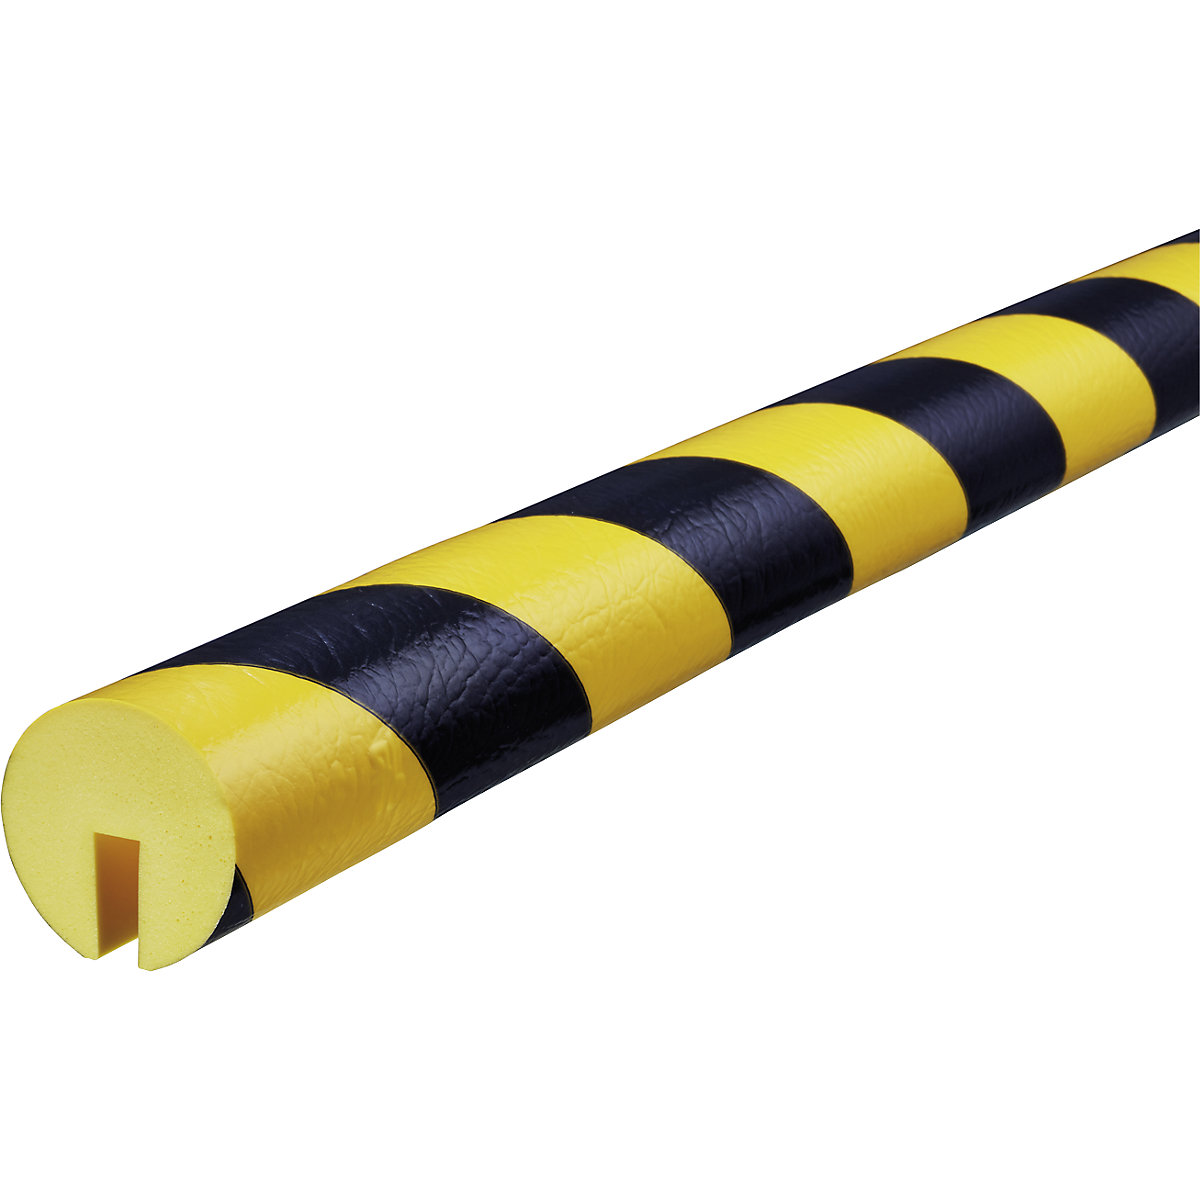 Proteção de rebordos Knuffi® – SHG, tipo B, 1 rolo de 5 m, preto/amarelo-23